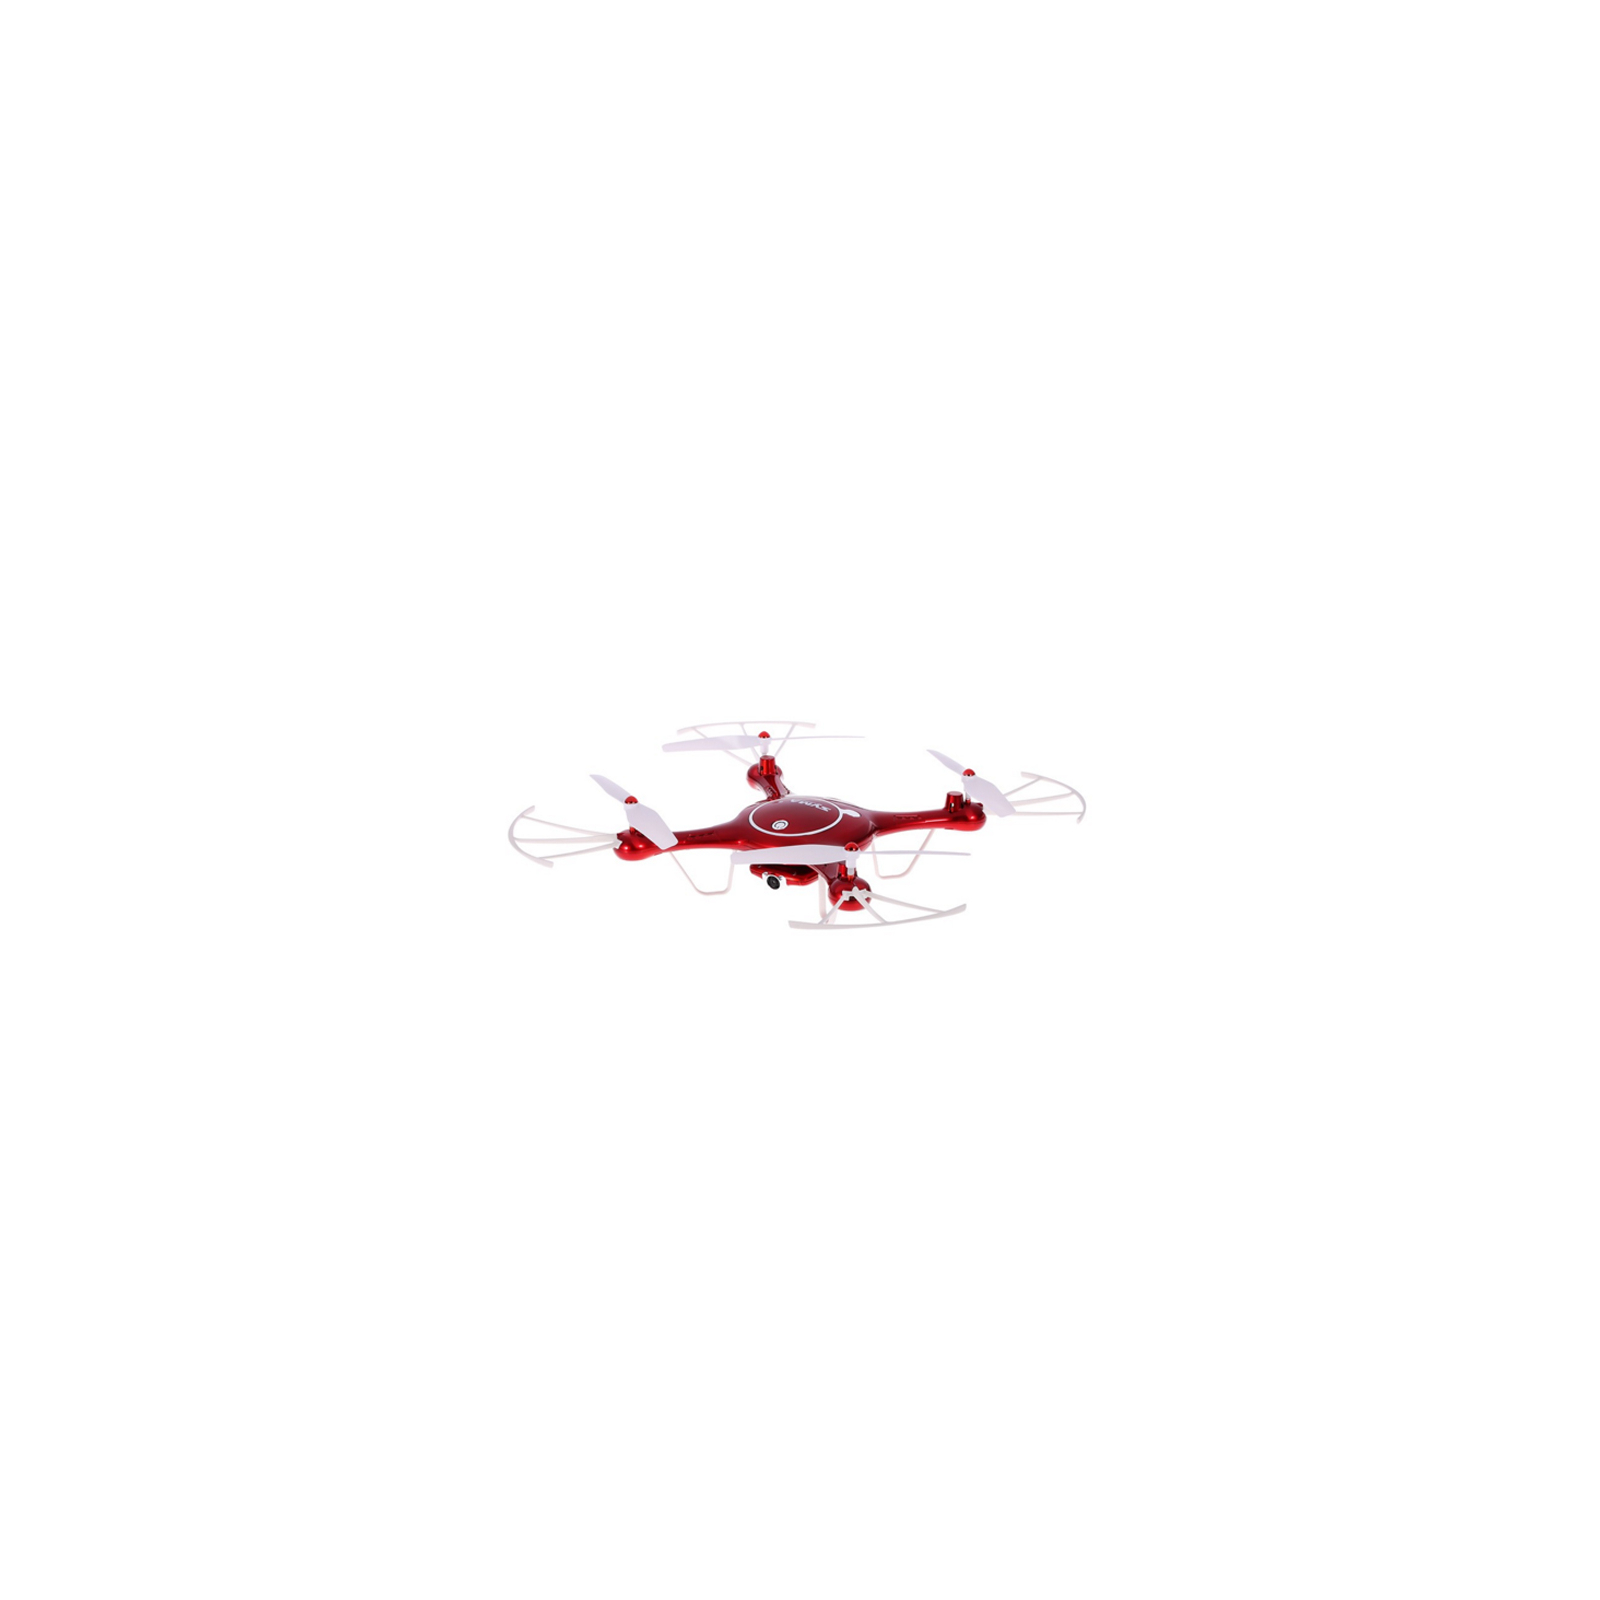 Квадрокоптер Syma X5UW 320мм HD 720p WiFi камера красный (45193)